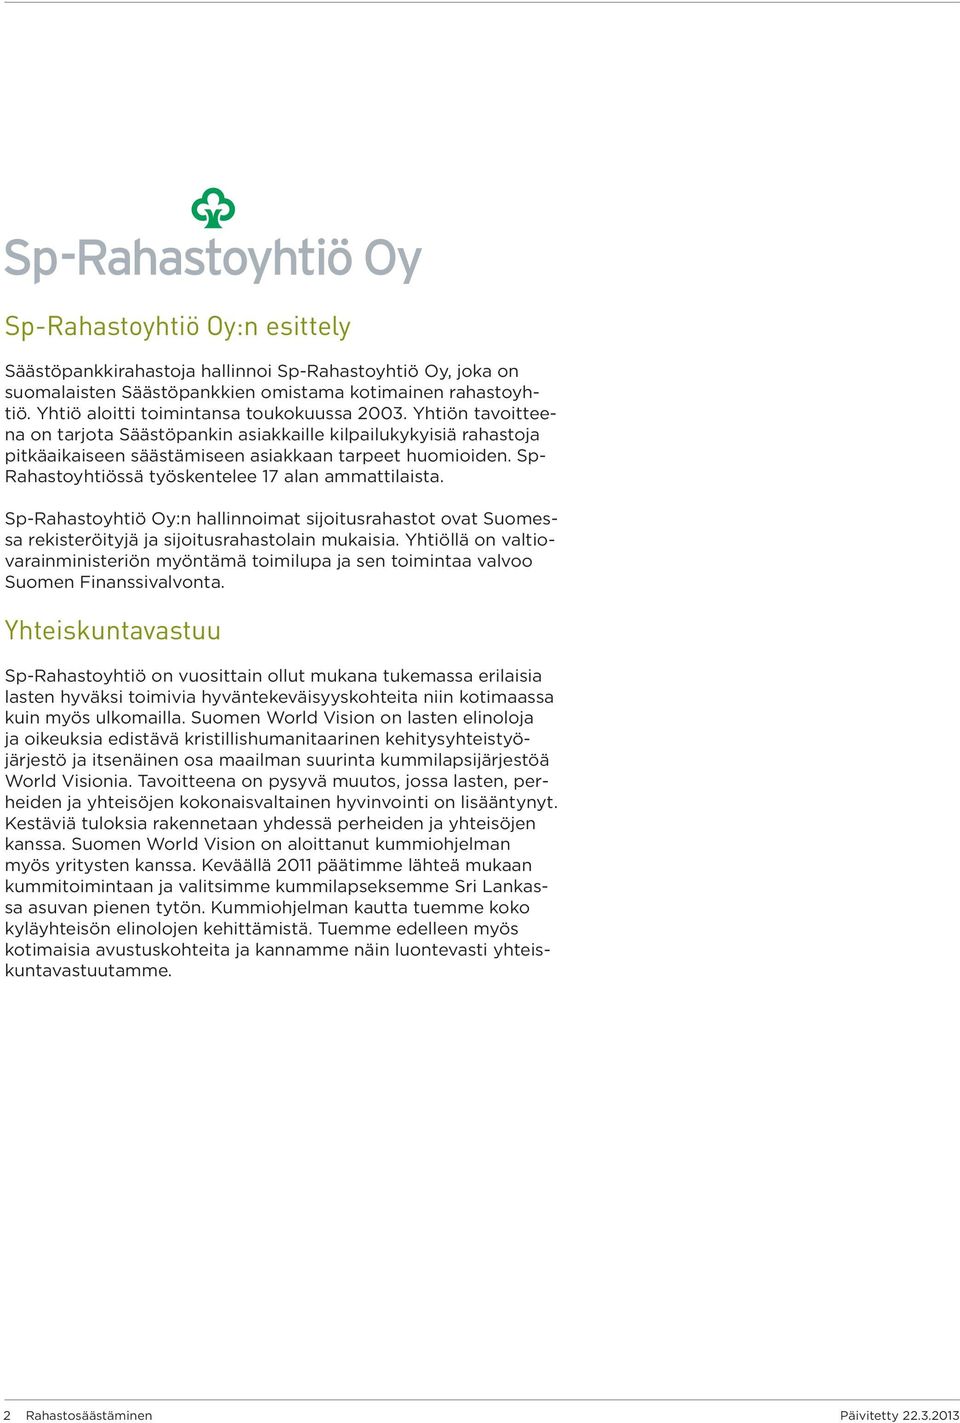 Sp-Rahastoyhtiö Oy:n hallinnoimat sijoitusrahastot ovat Suomessa rekisteröityjä ja sijoitusrahastolain mukaisia.